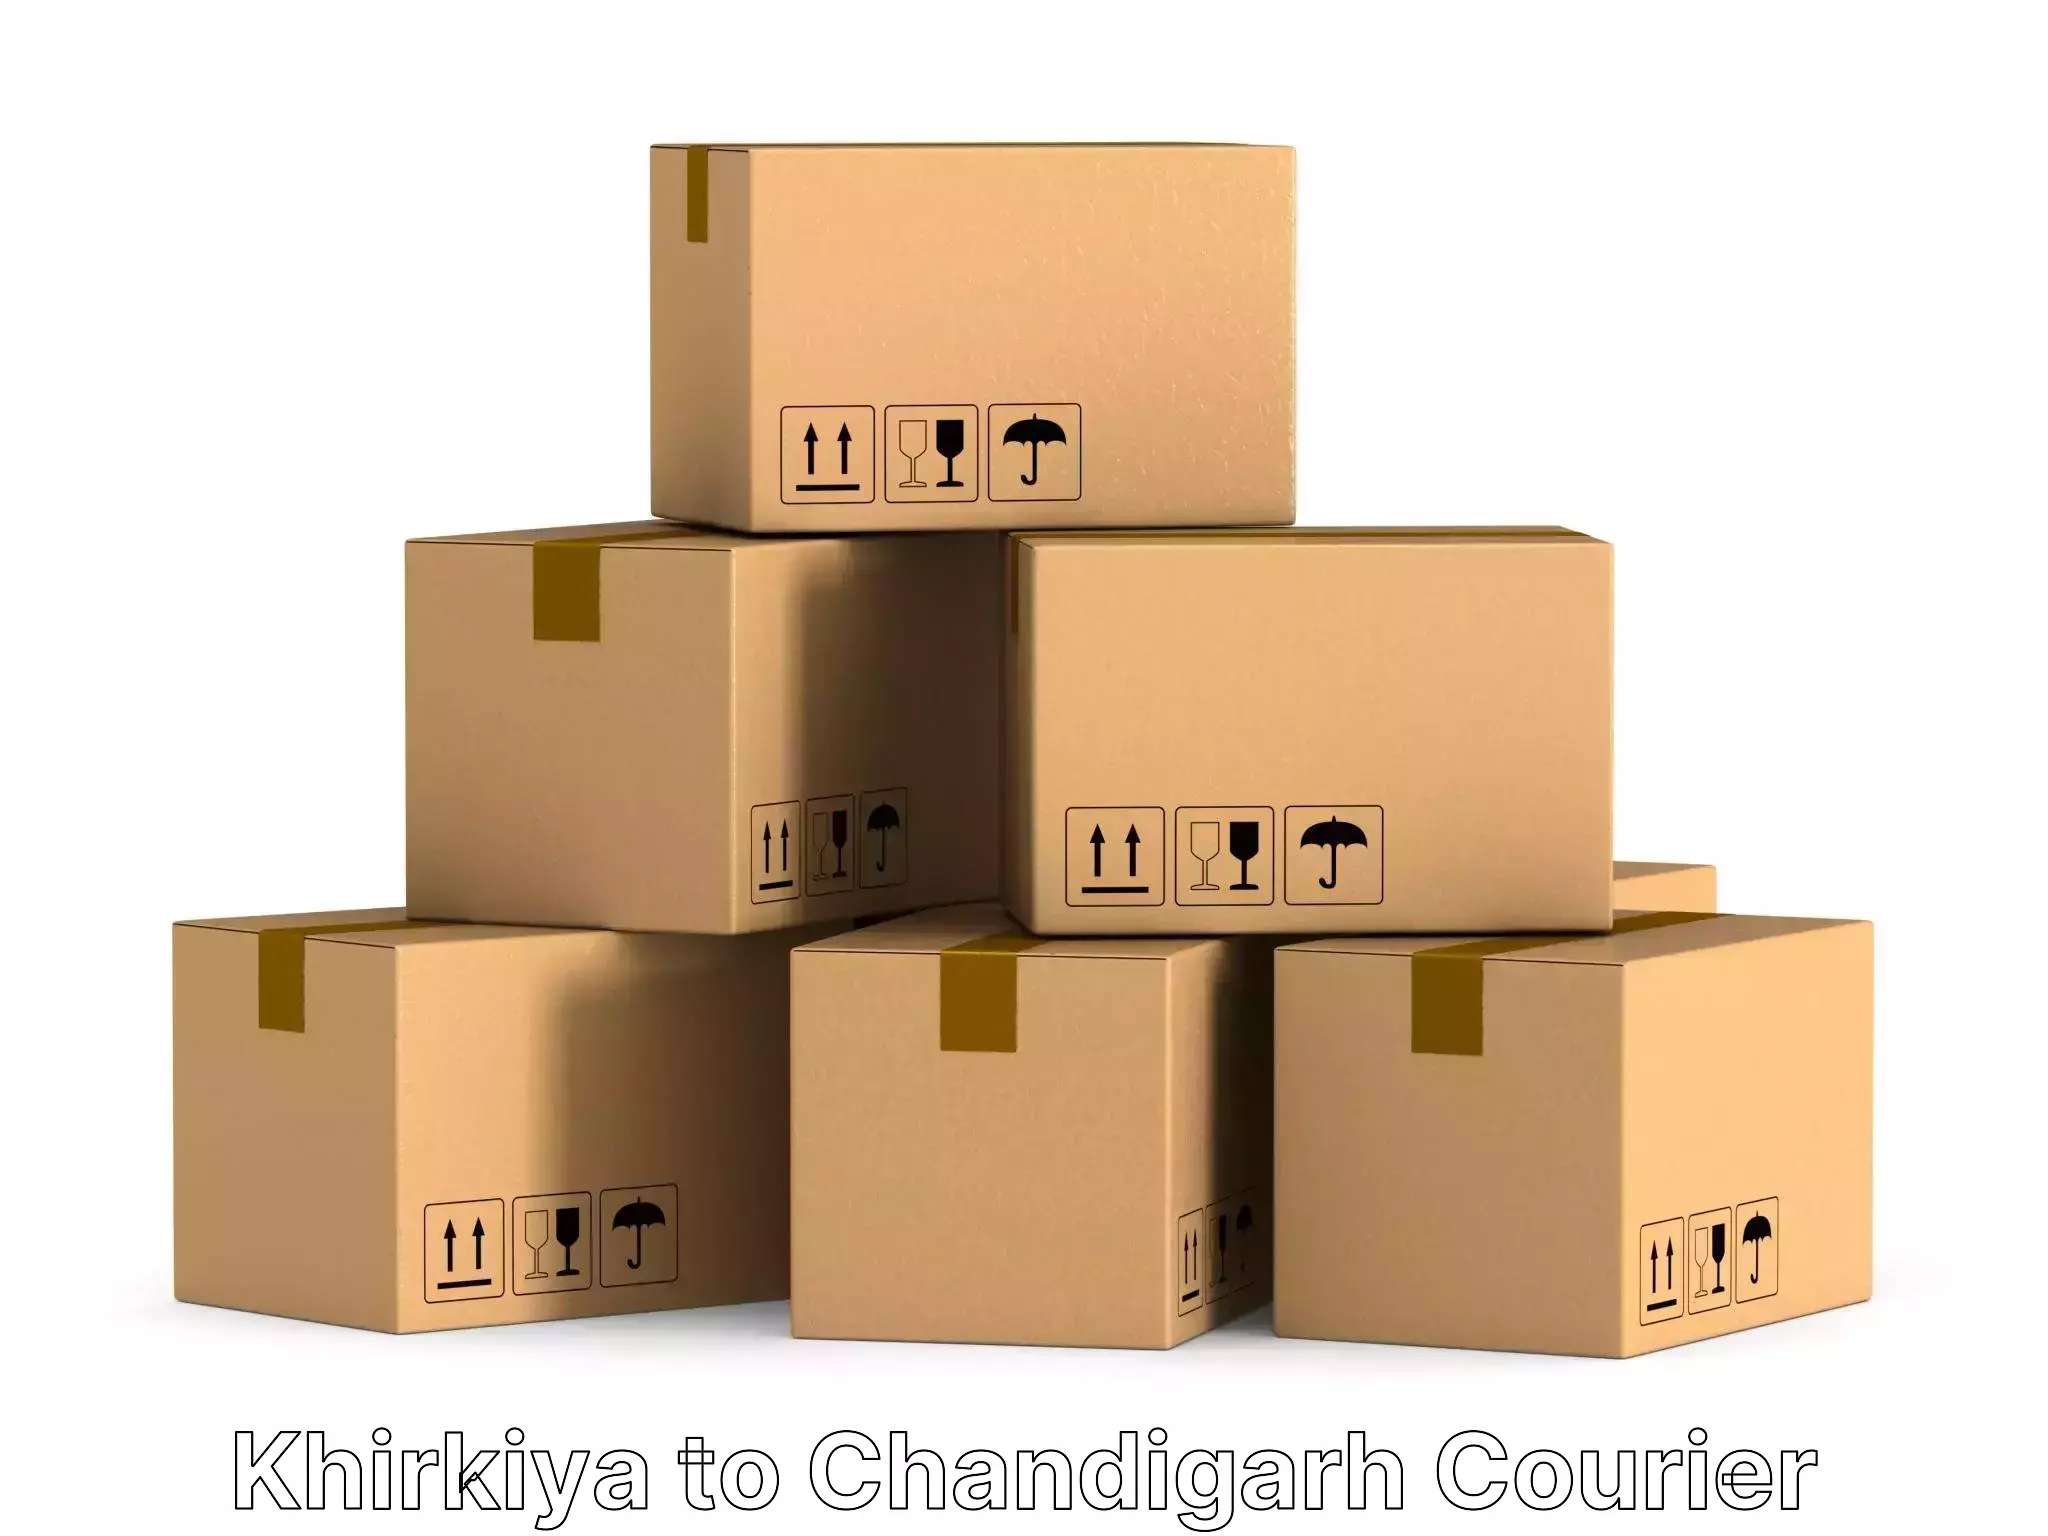 Quality moving company Khirkiya to Chandigarh